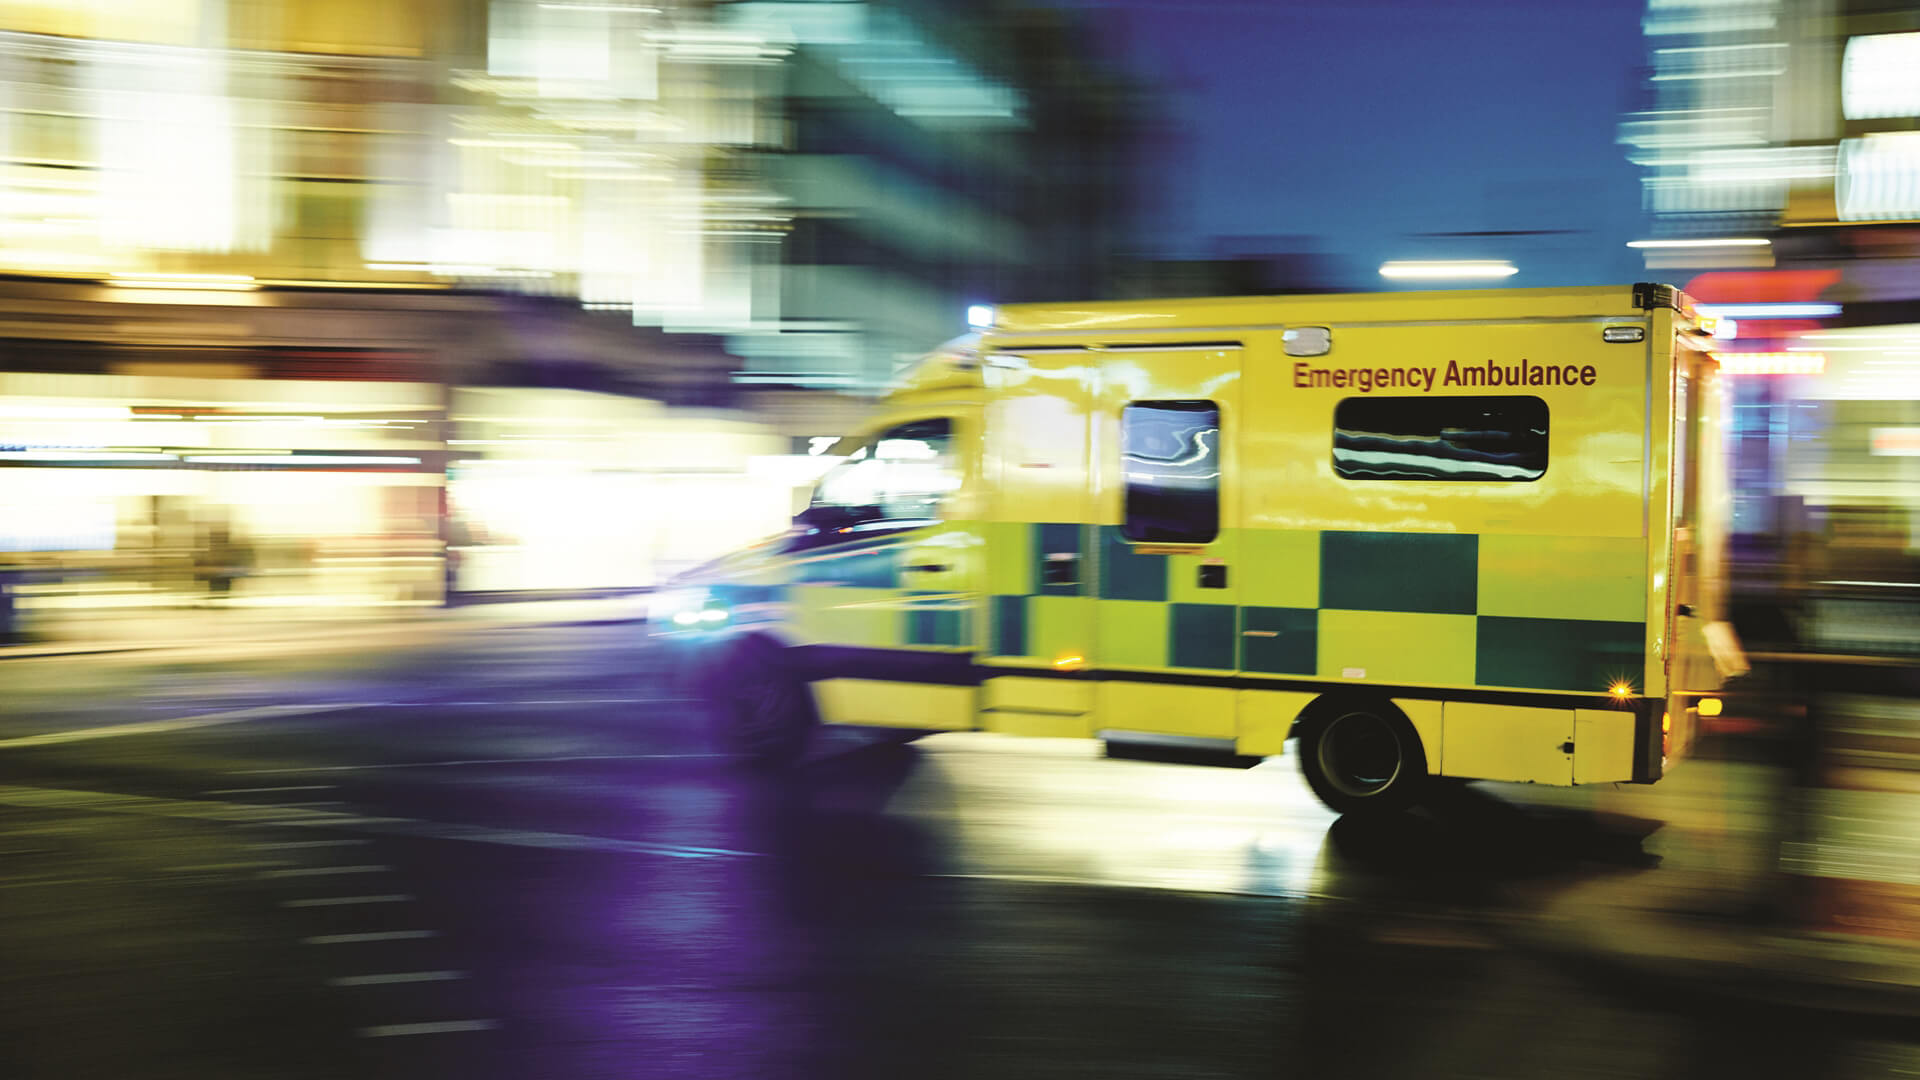 An ambulance arrives at a hospital.